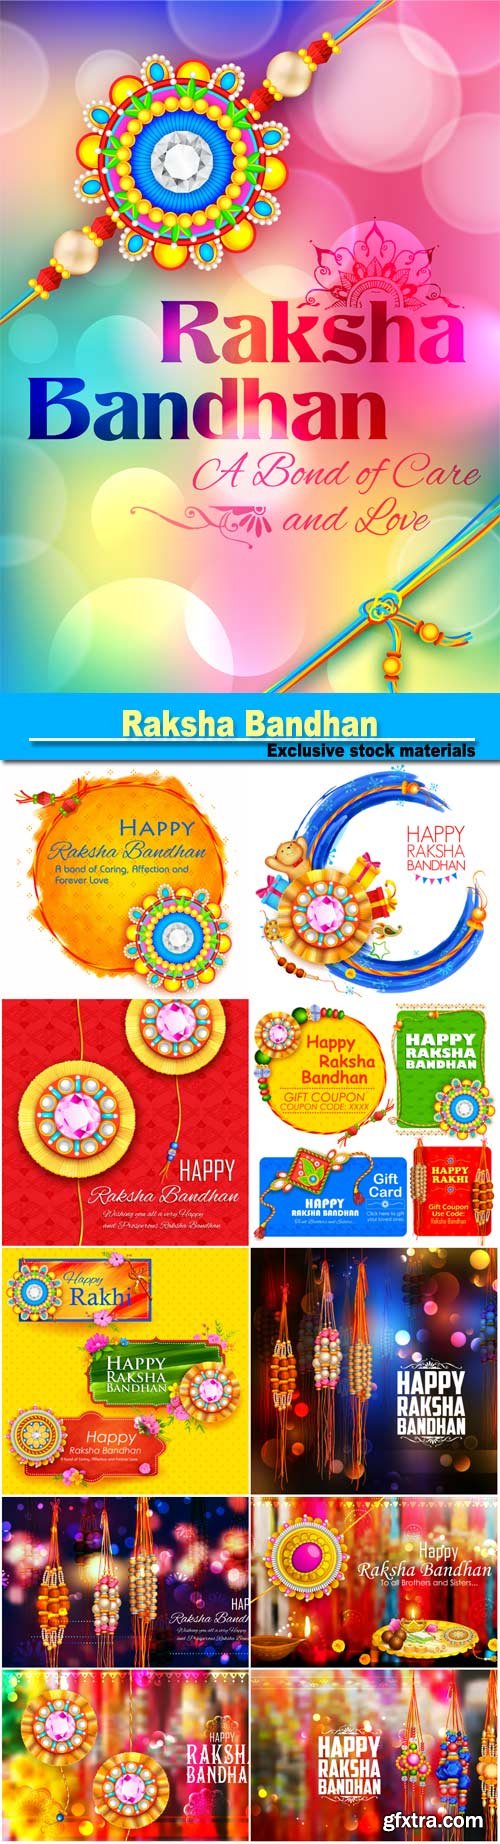 Raksha Bandhan, Indian festival for brother and sister bonding celebration